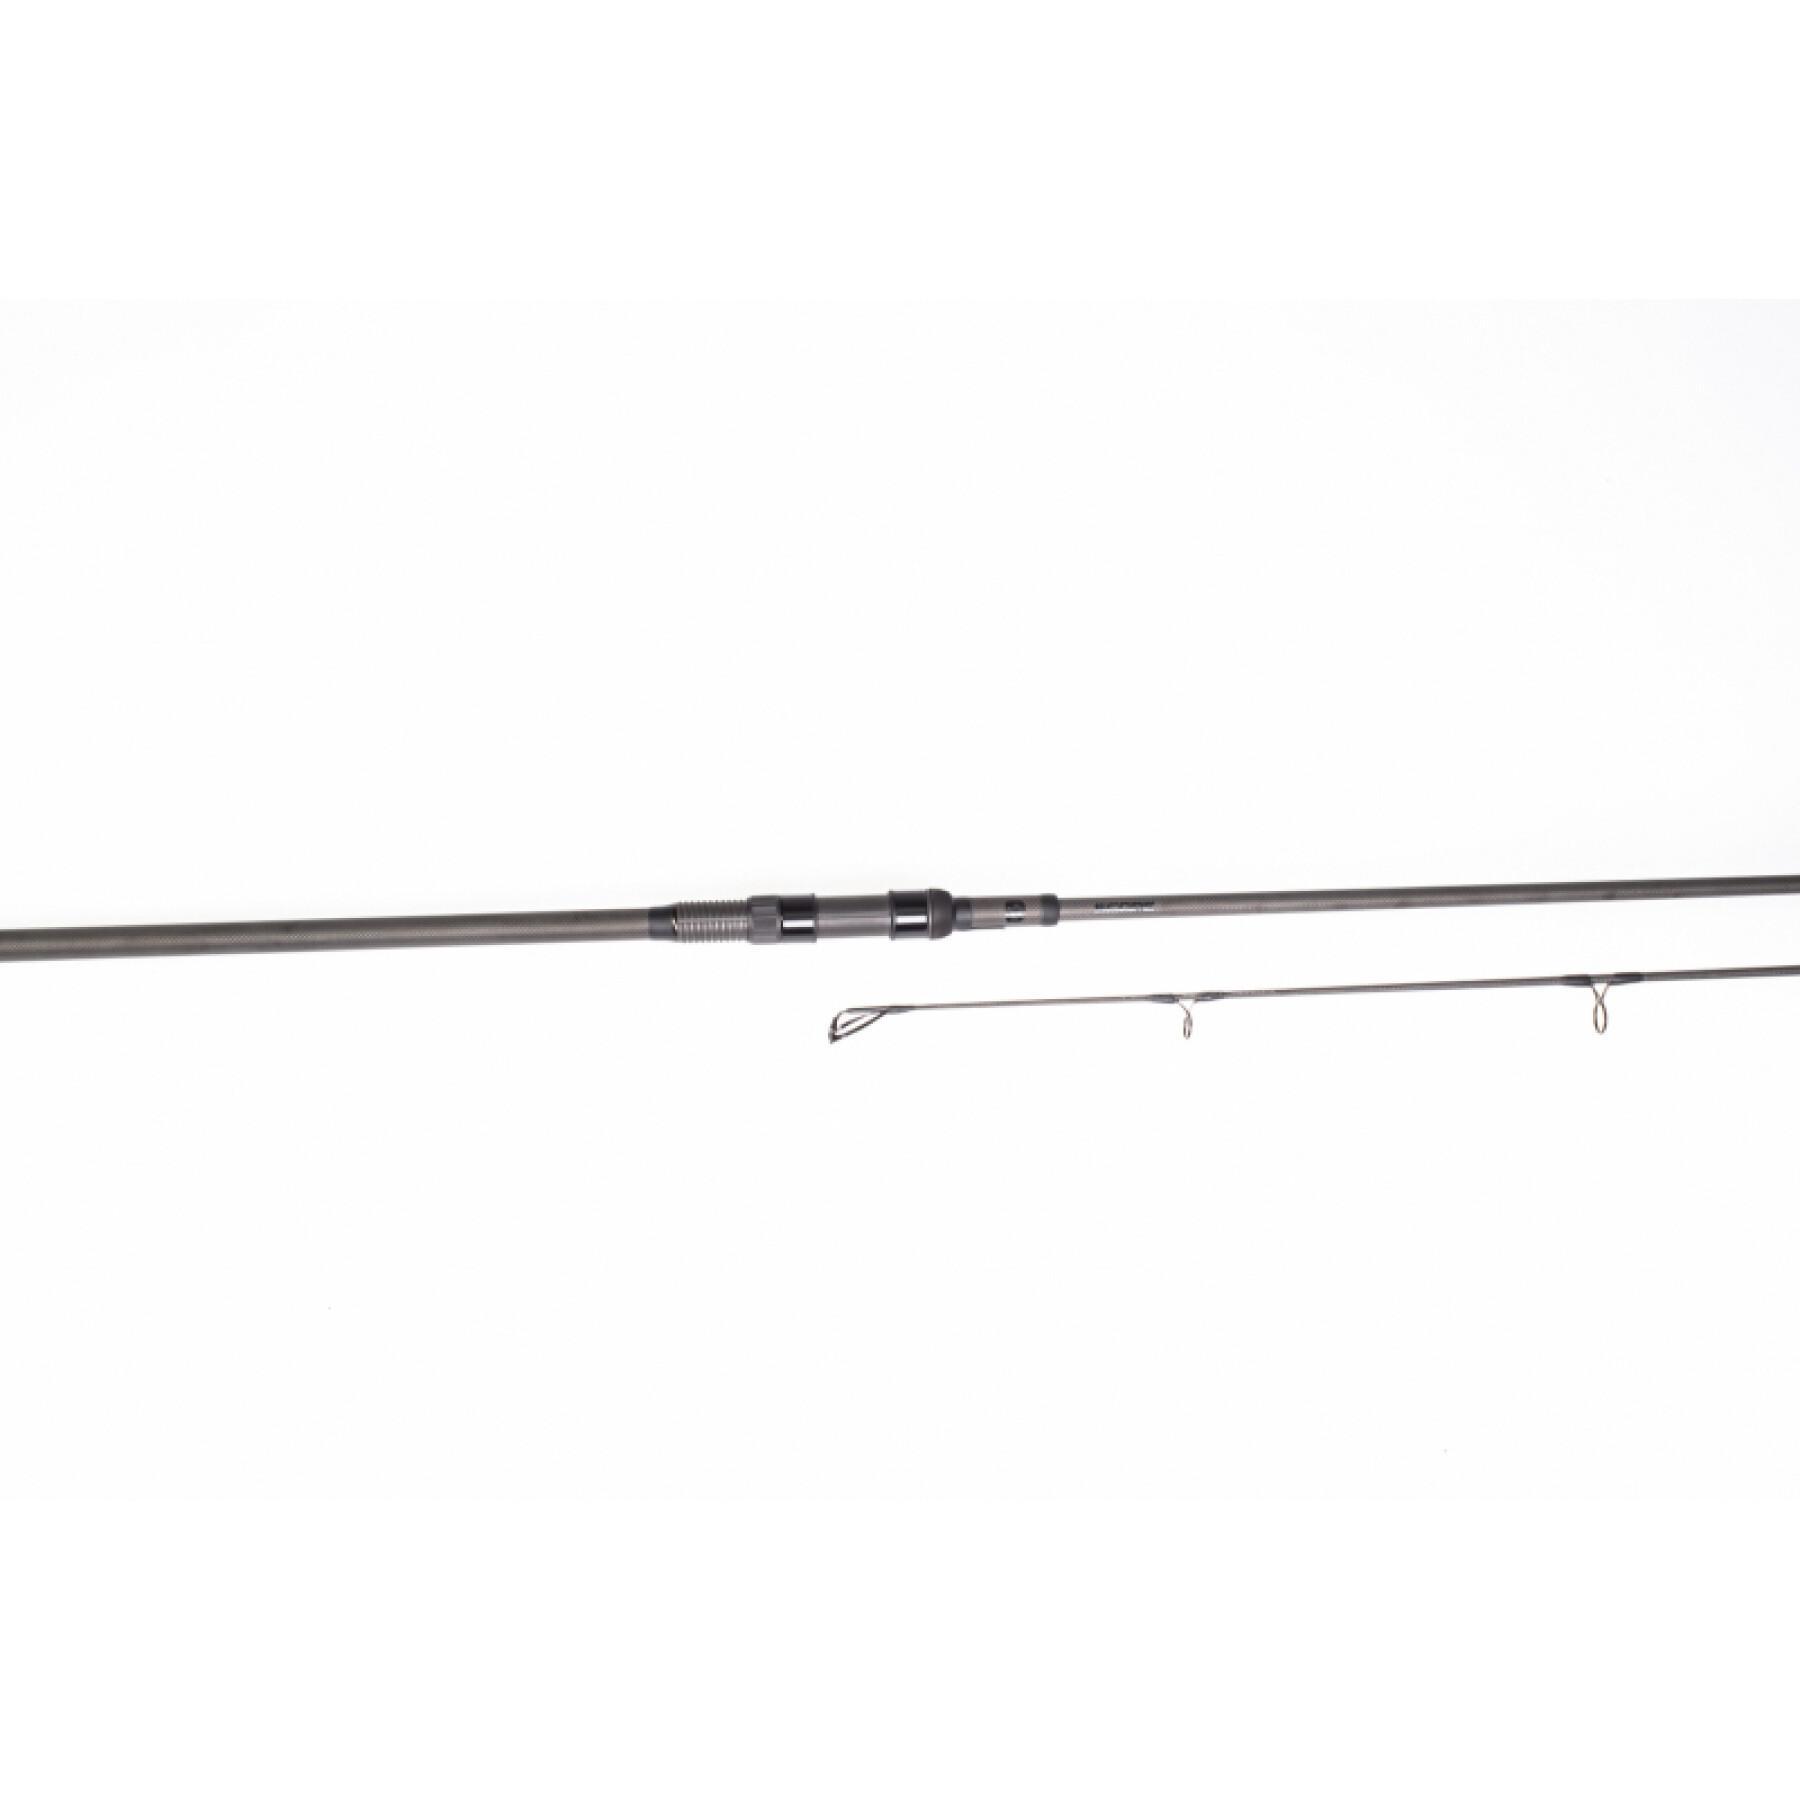 Vara de pesca Scope Rods Abbreviated 9ft 4.5lb